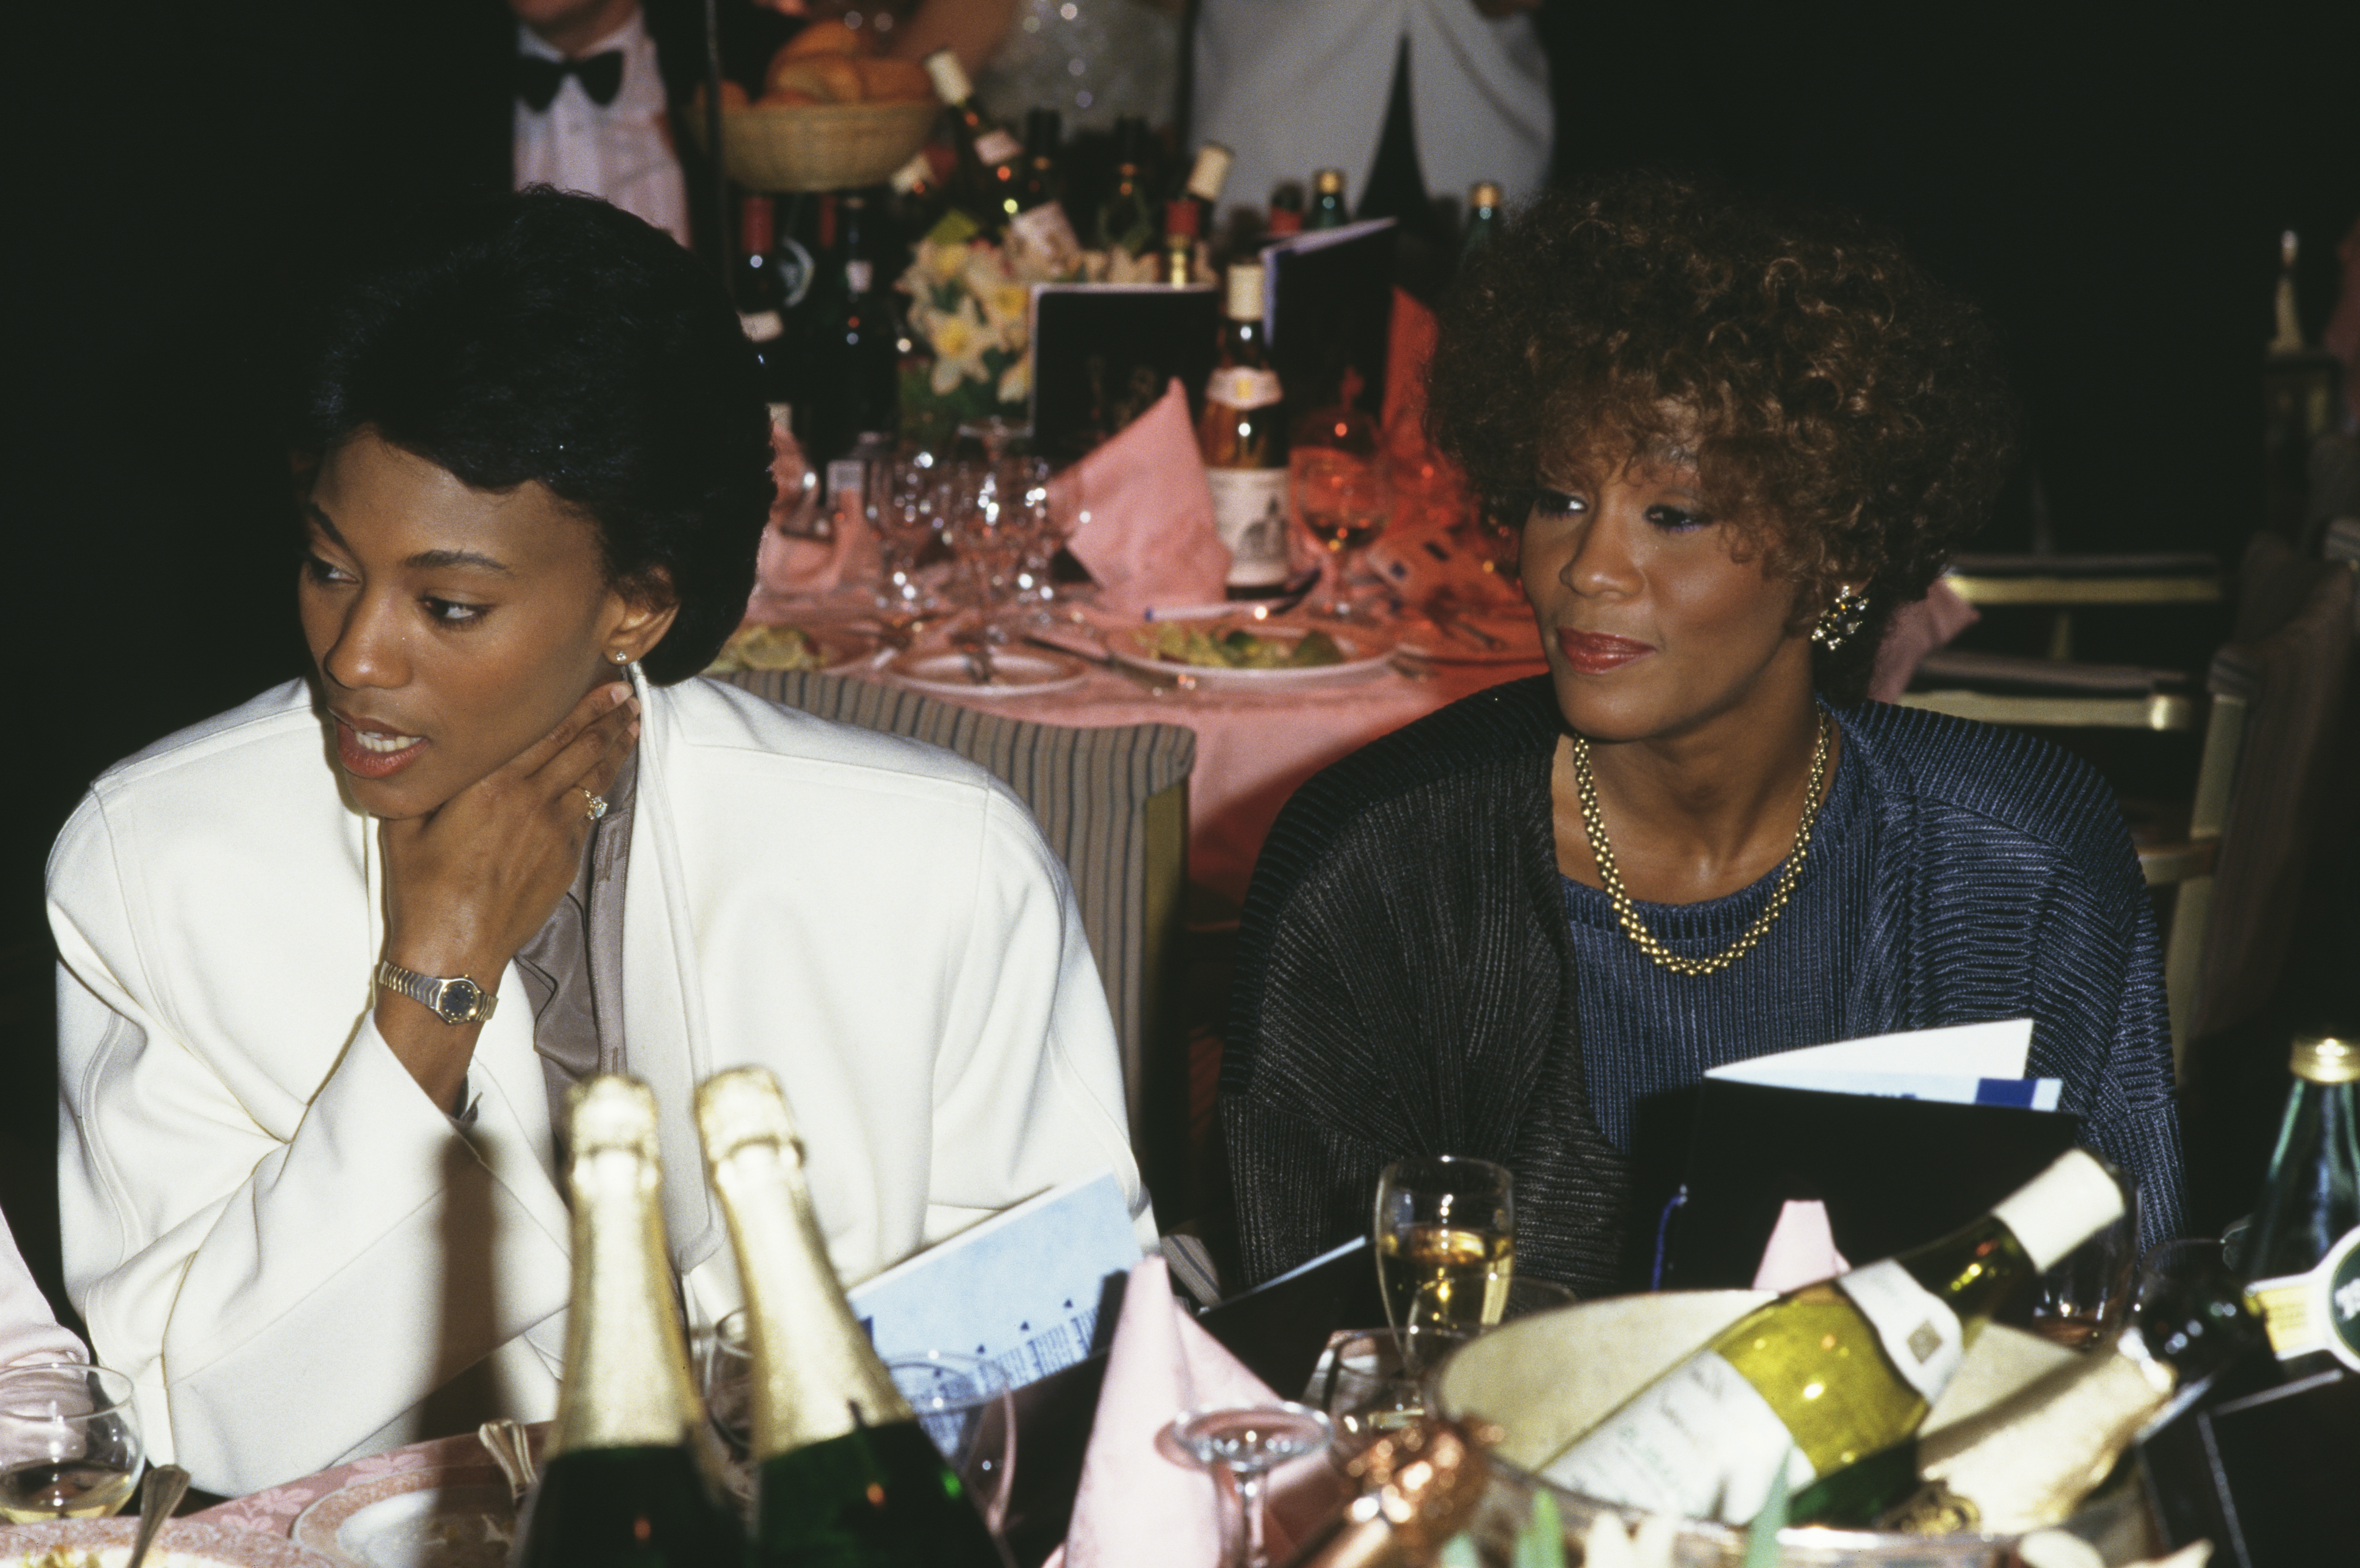 La increíble película de la vida privada de Whitney Houston llegará en 2022